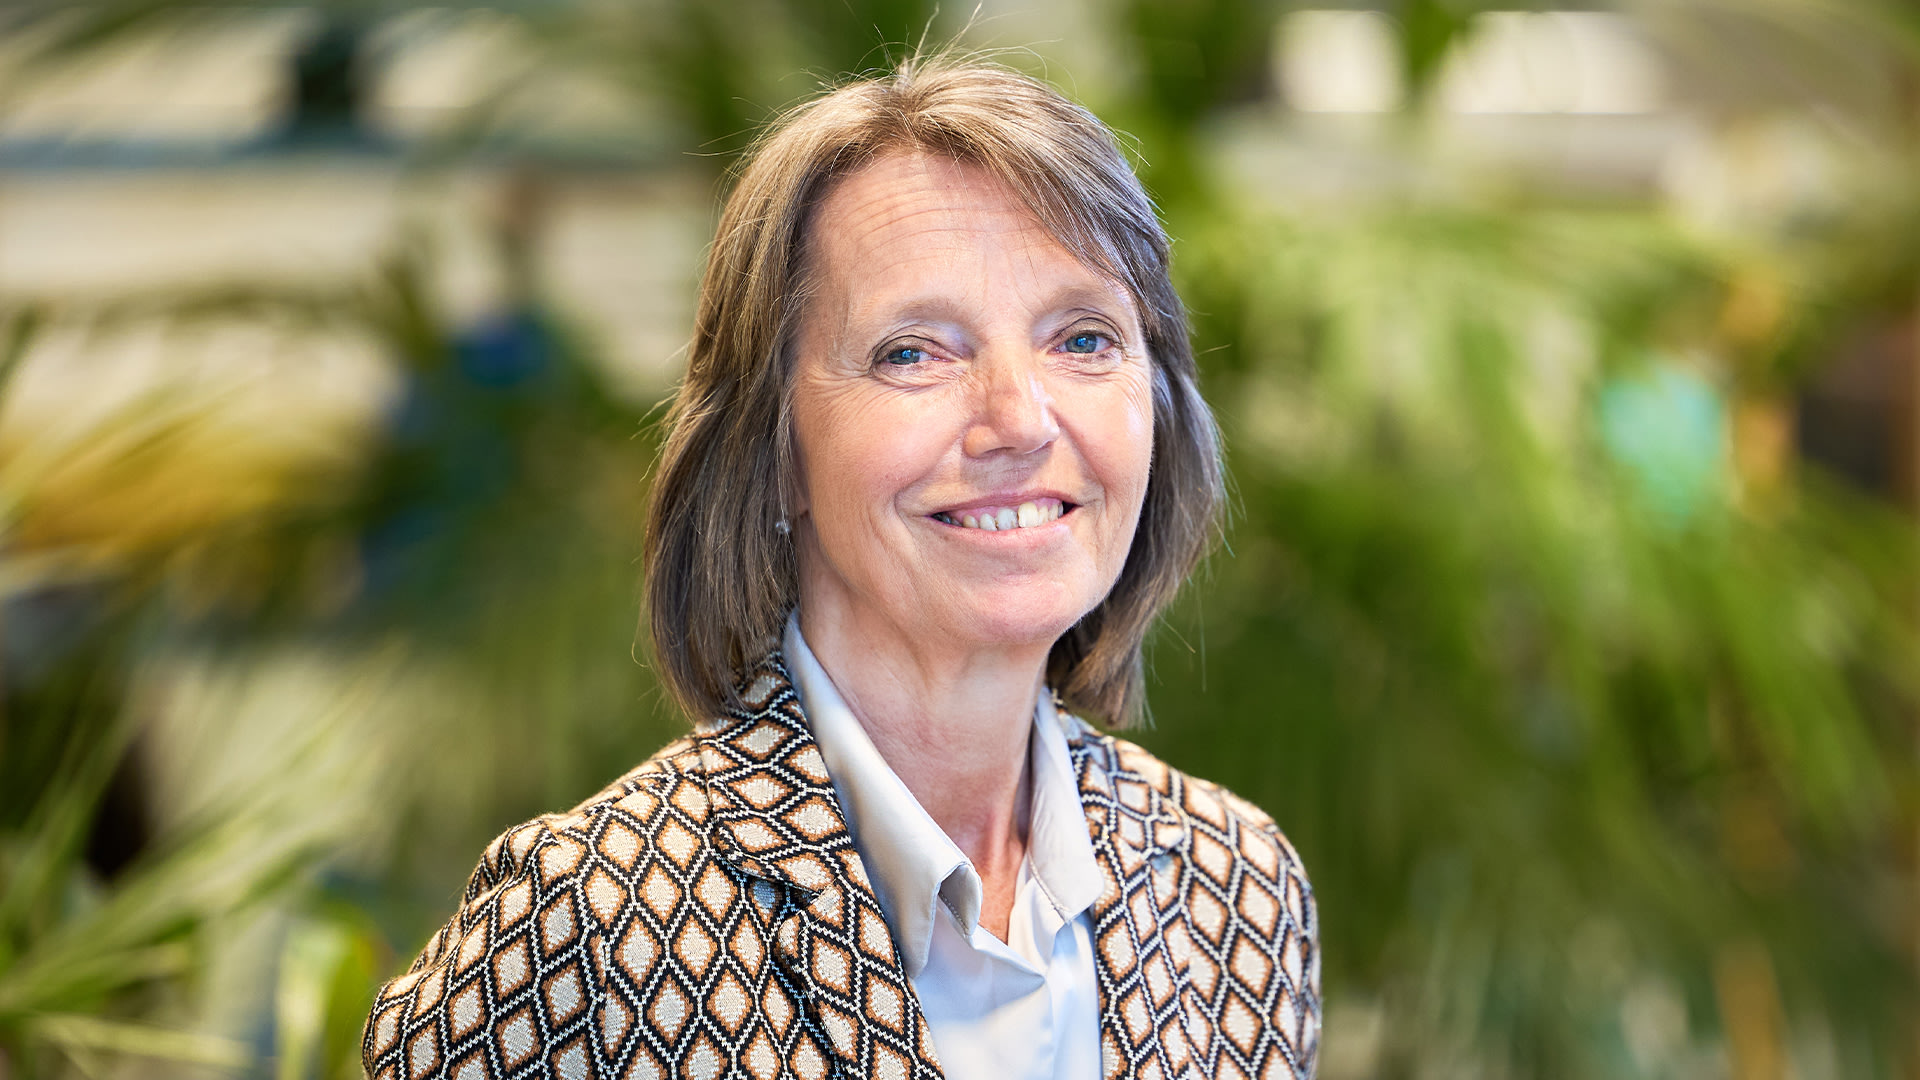 Sonja De Becker | President of the Board